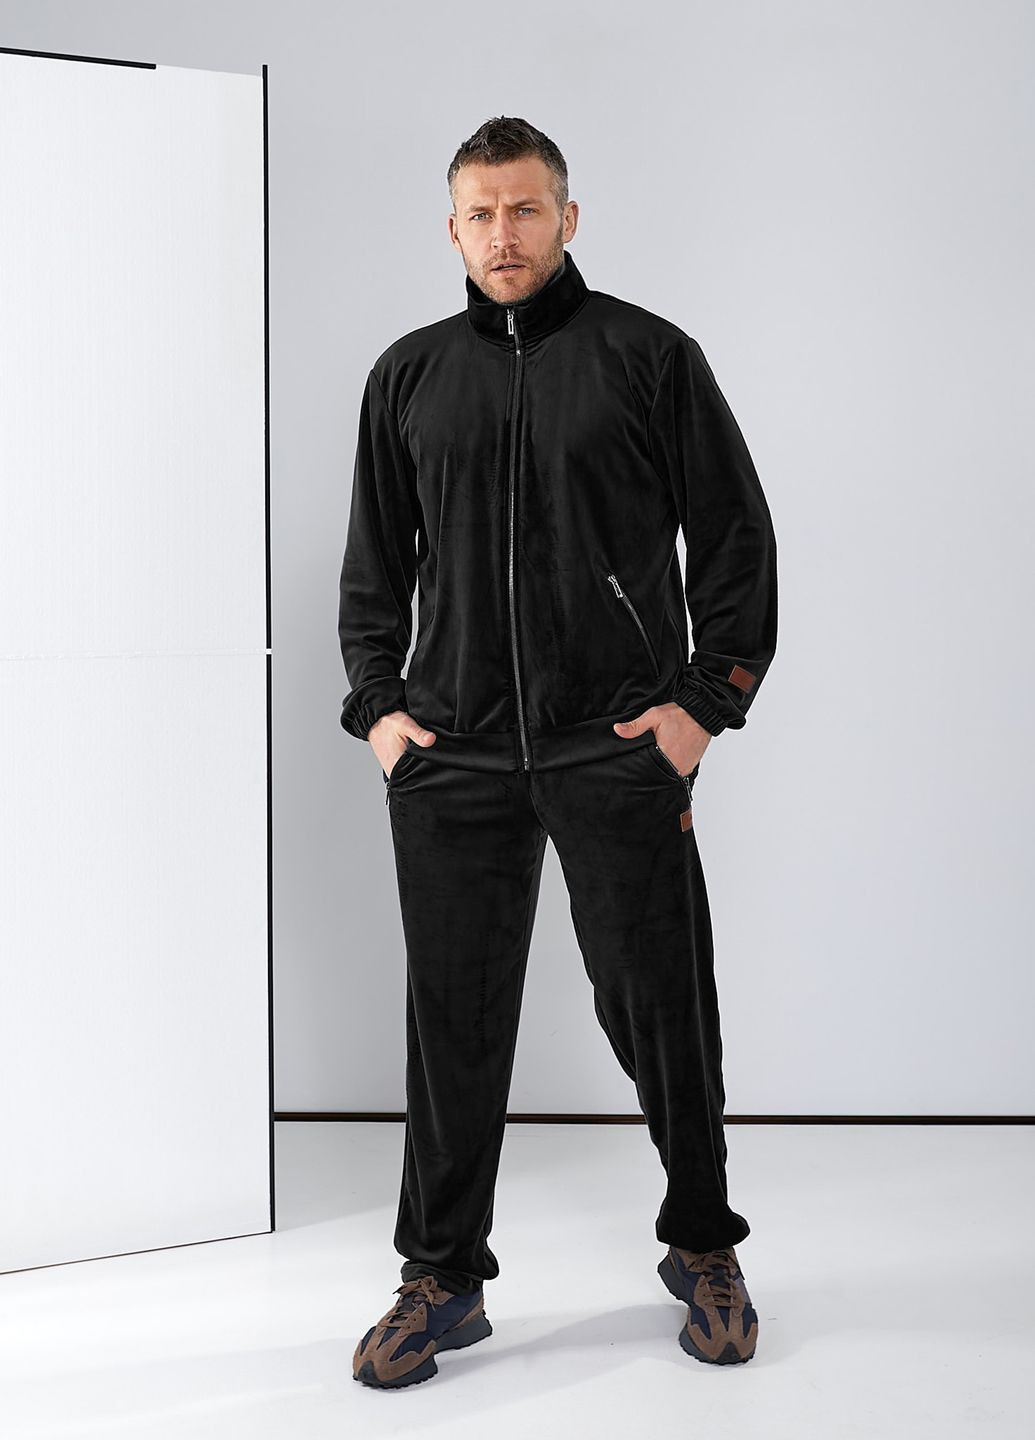 Черный демисезонный спортивный костюм из велюра, с курткой на молнии, и 4-мя карманами. Tailer